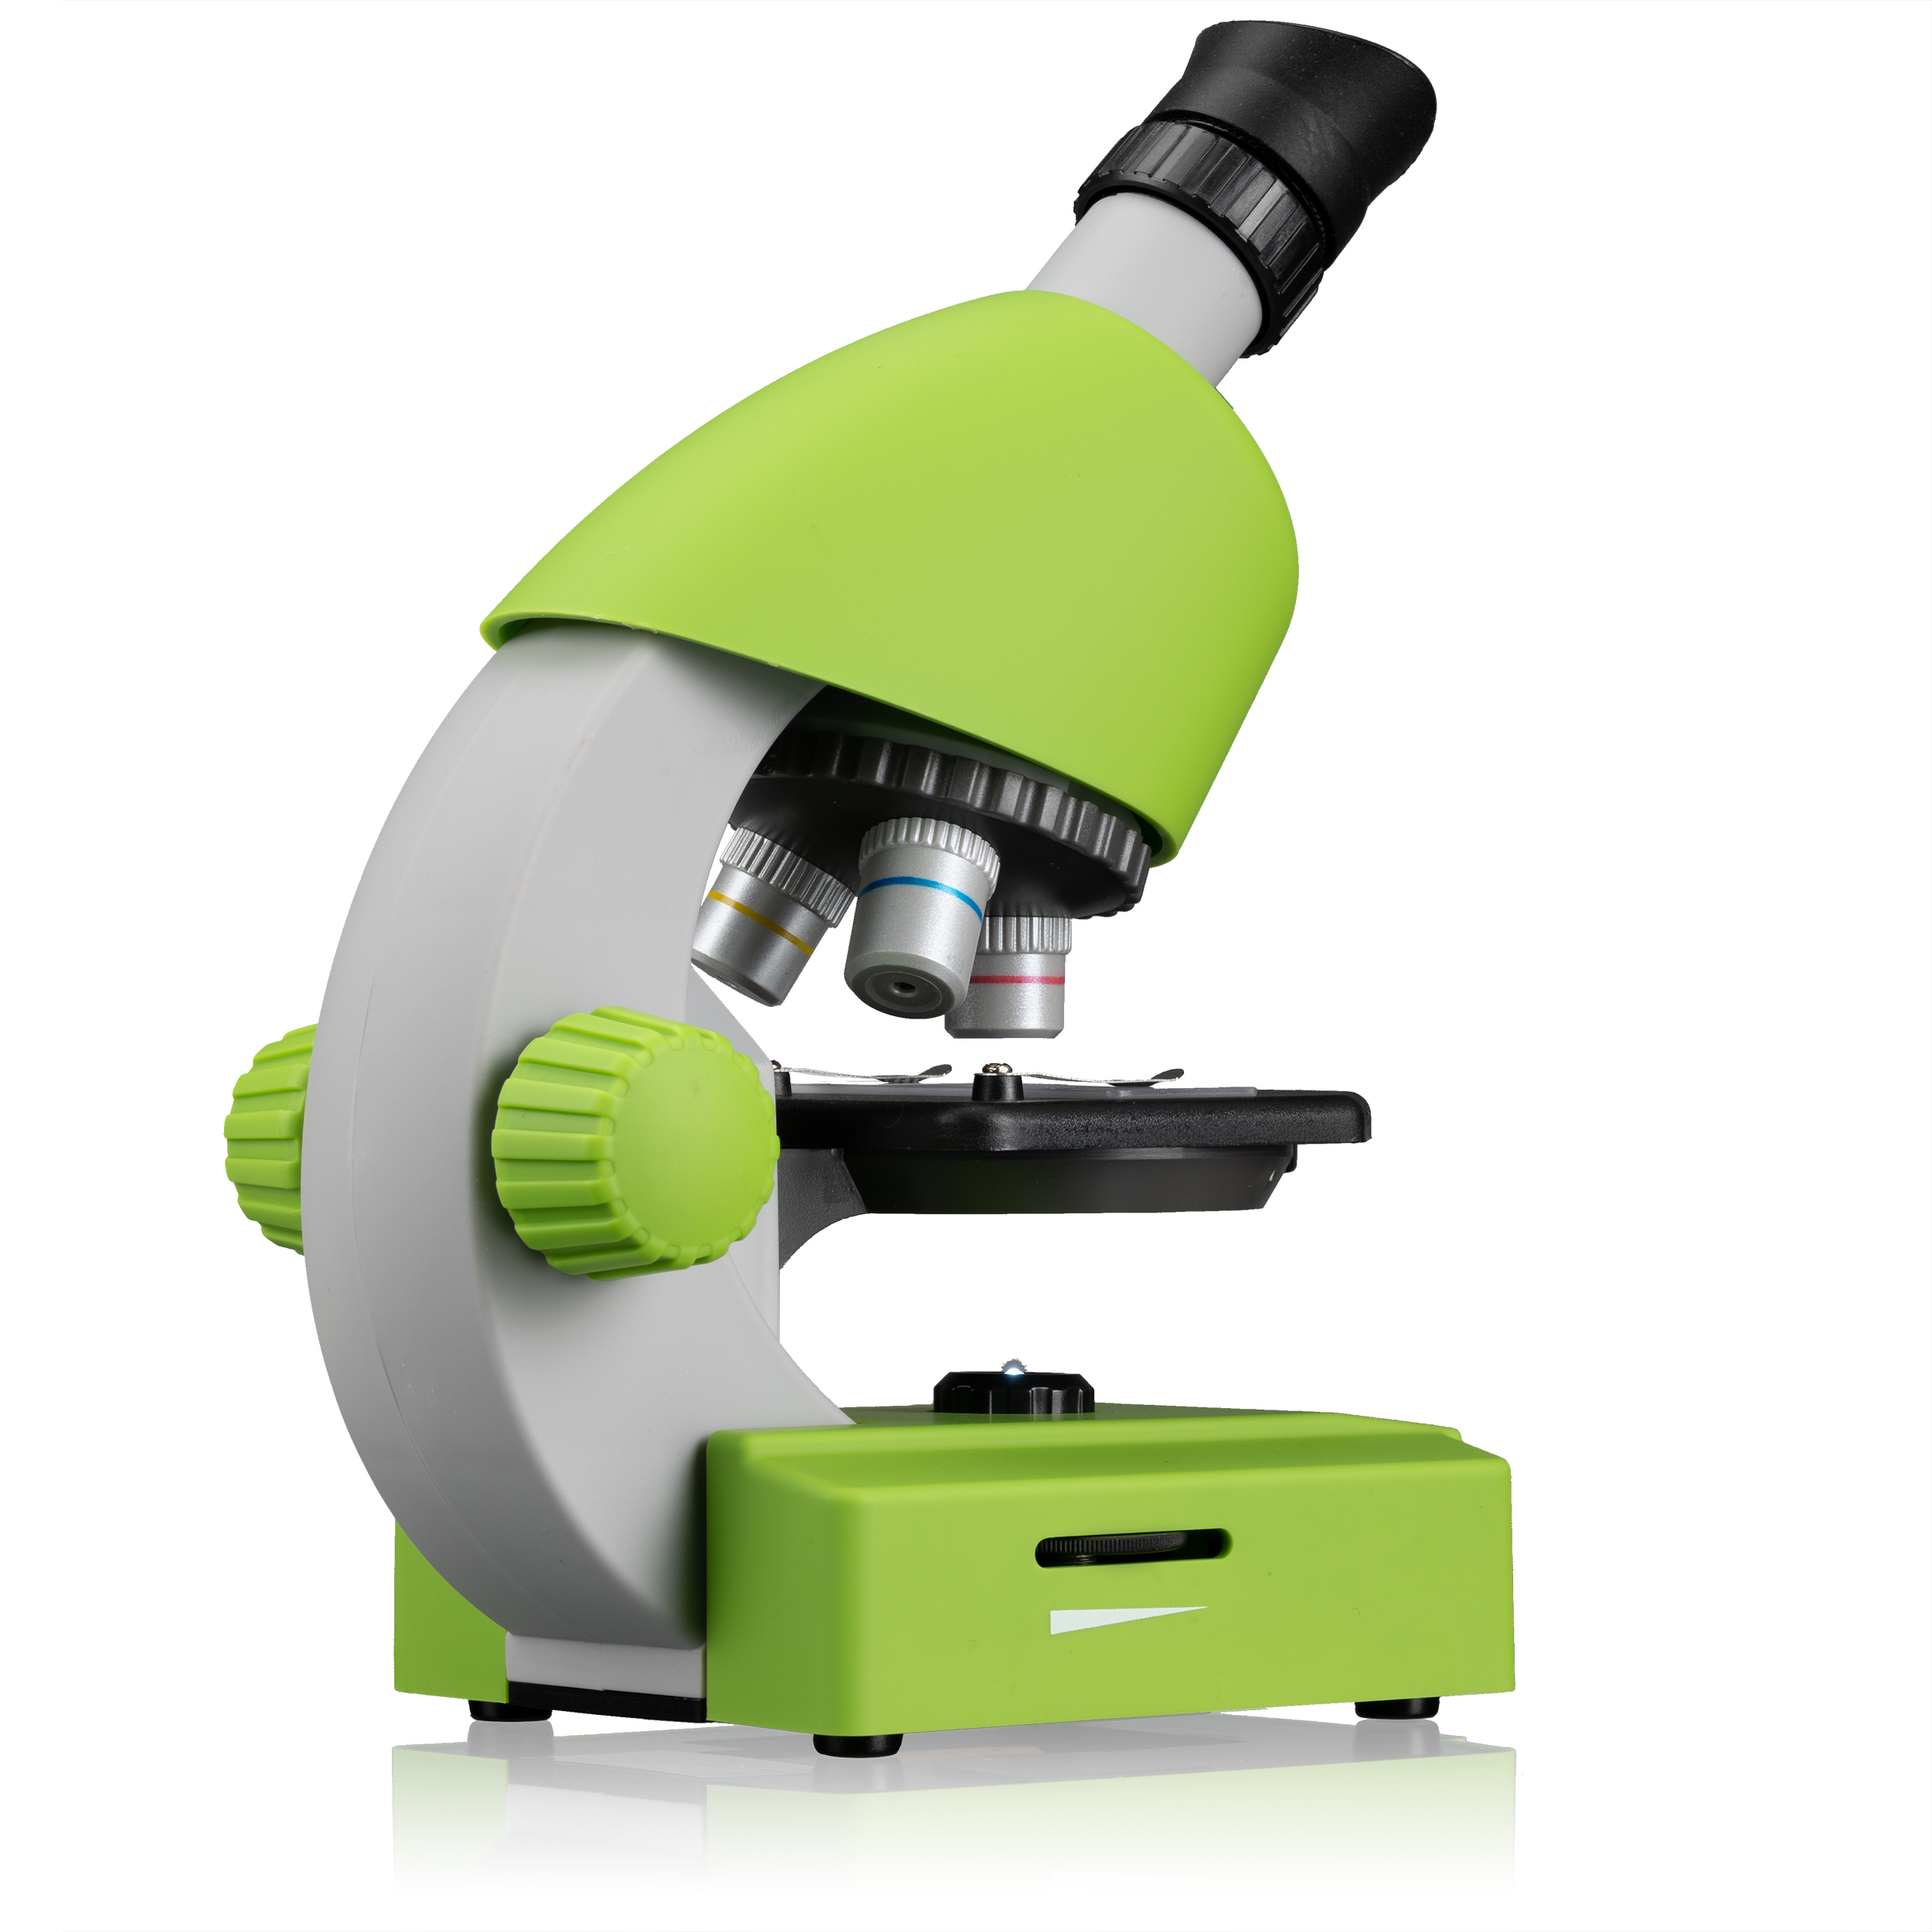 40x-640x BRESSER JUNIOR Color Mikroskop,